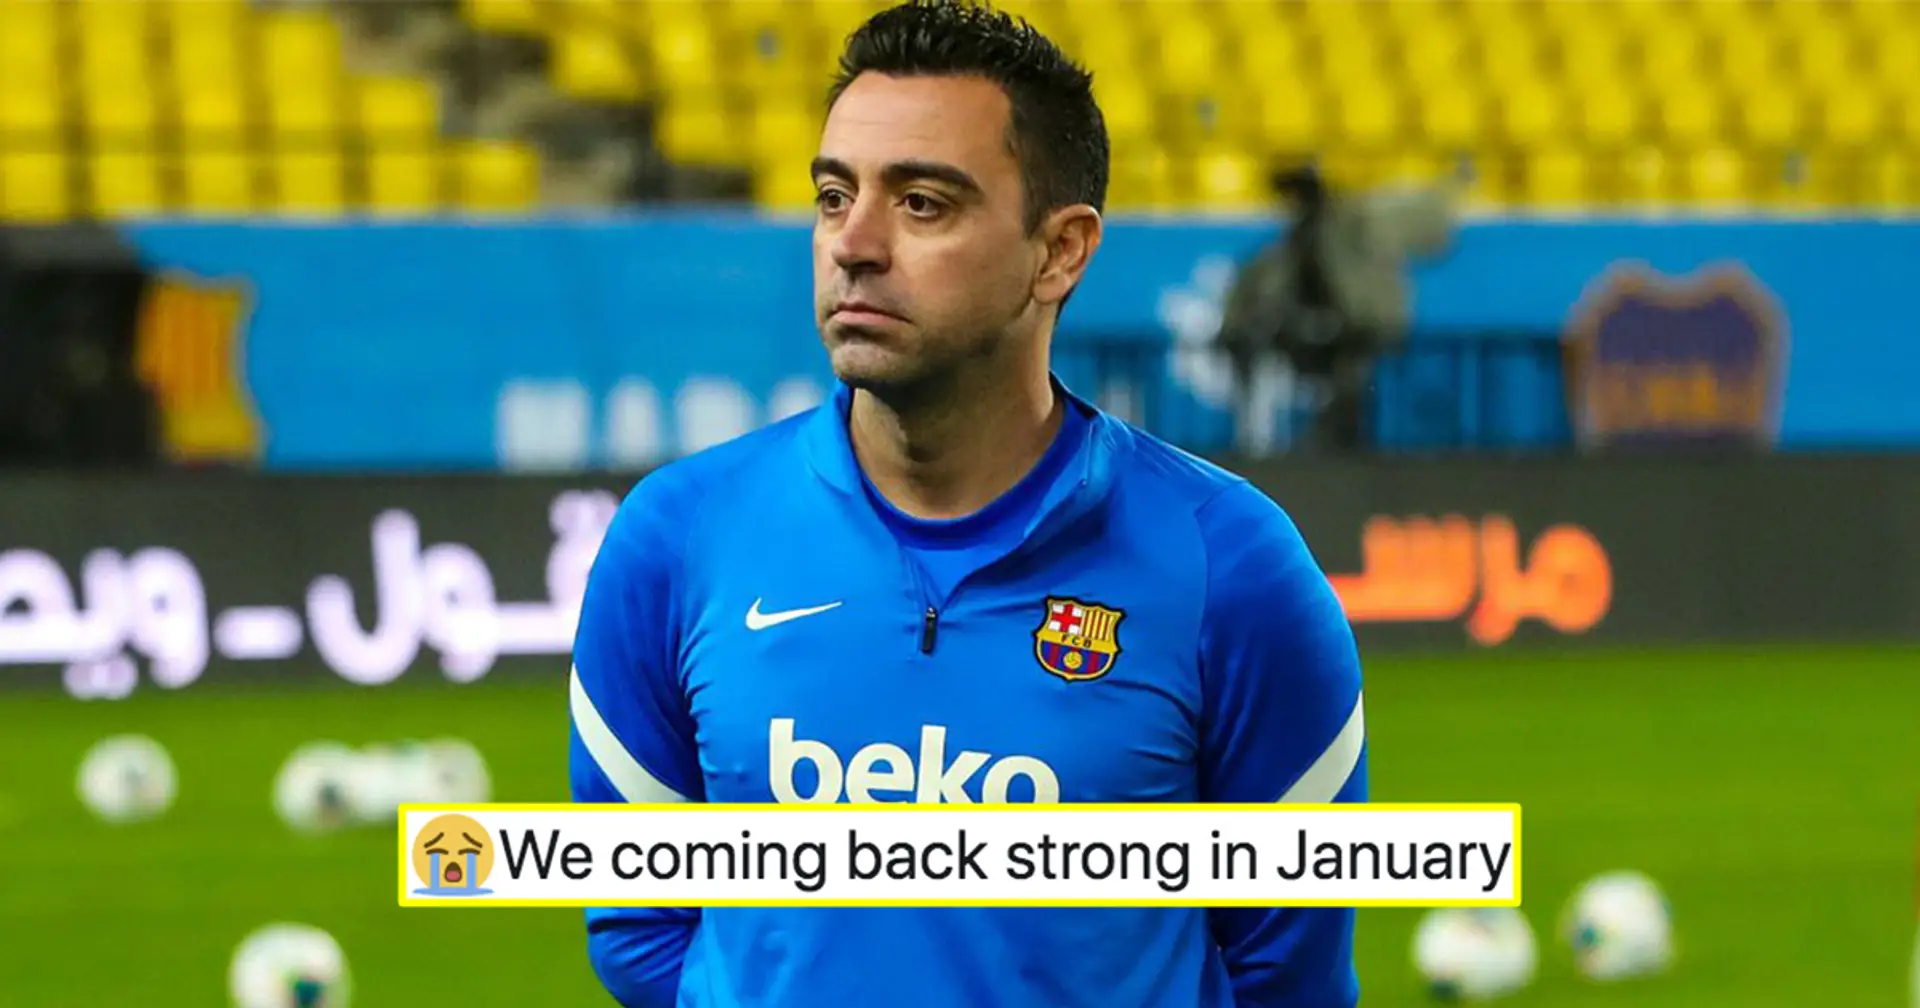 Les fans du Barca accueillent le retour de la "plus grande signature de cette année" - ce n'est pas un joueur